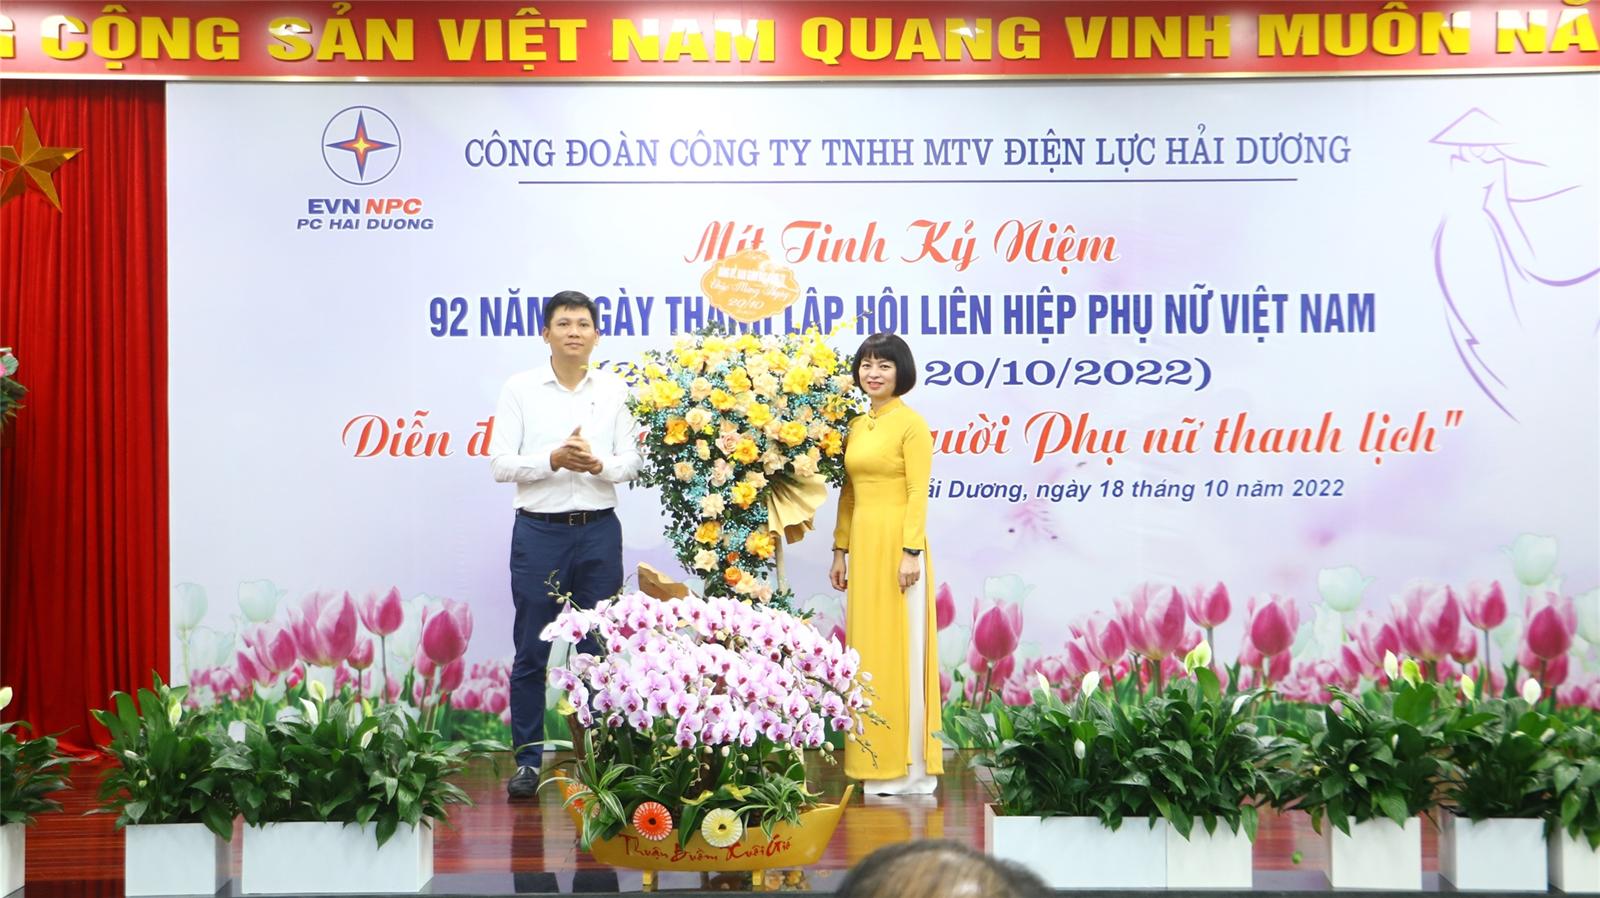 PC Hải Dương: Tổ chức các hoạt động kỷ niệm Ngày thành lập Hội LHPN Việt Nam và Ngày Phụ nữ Việt Nam 20/10